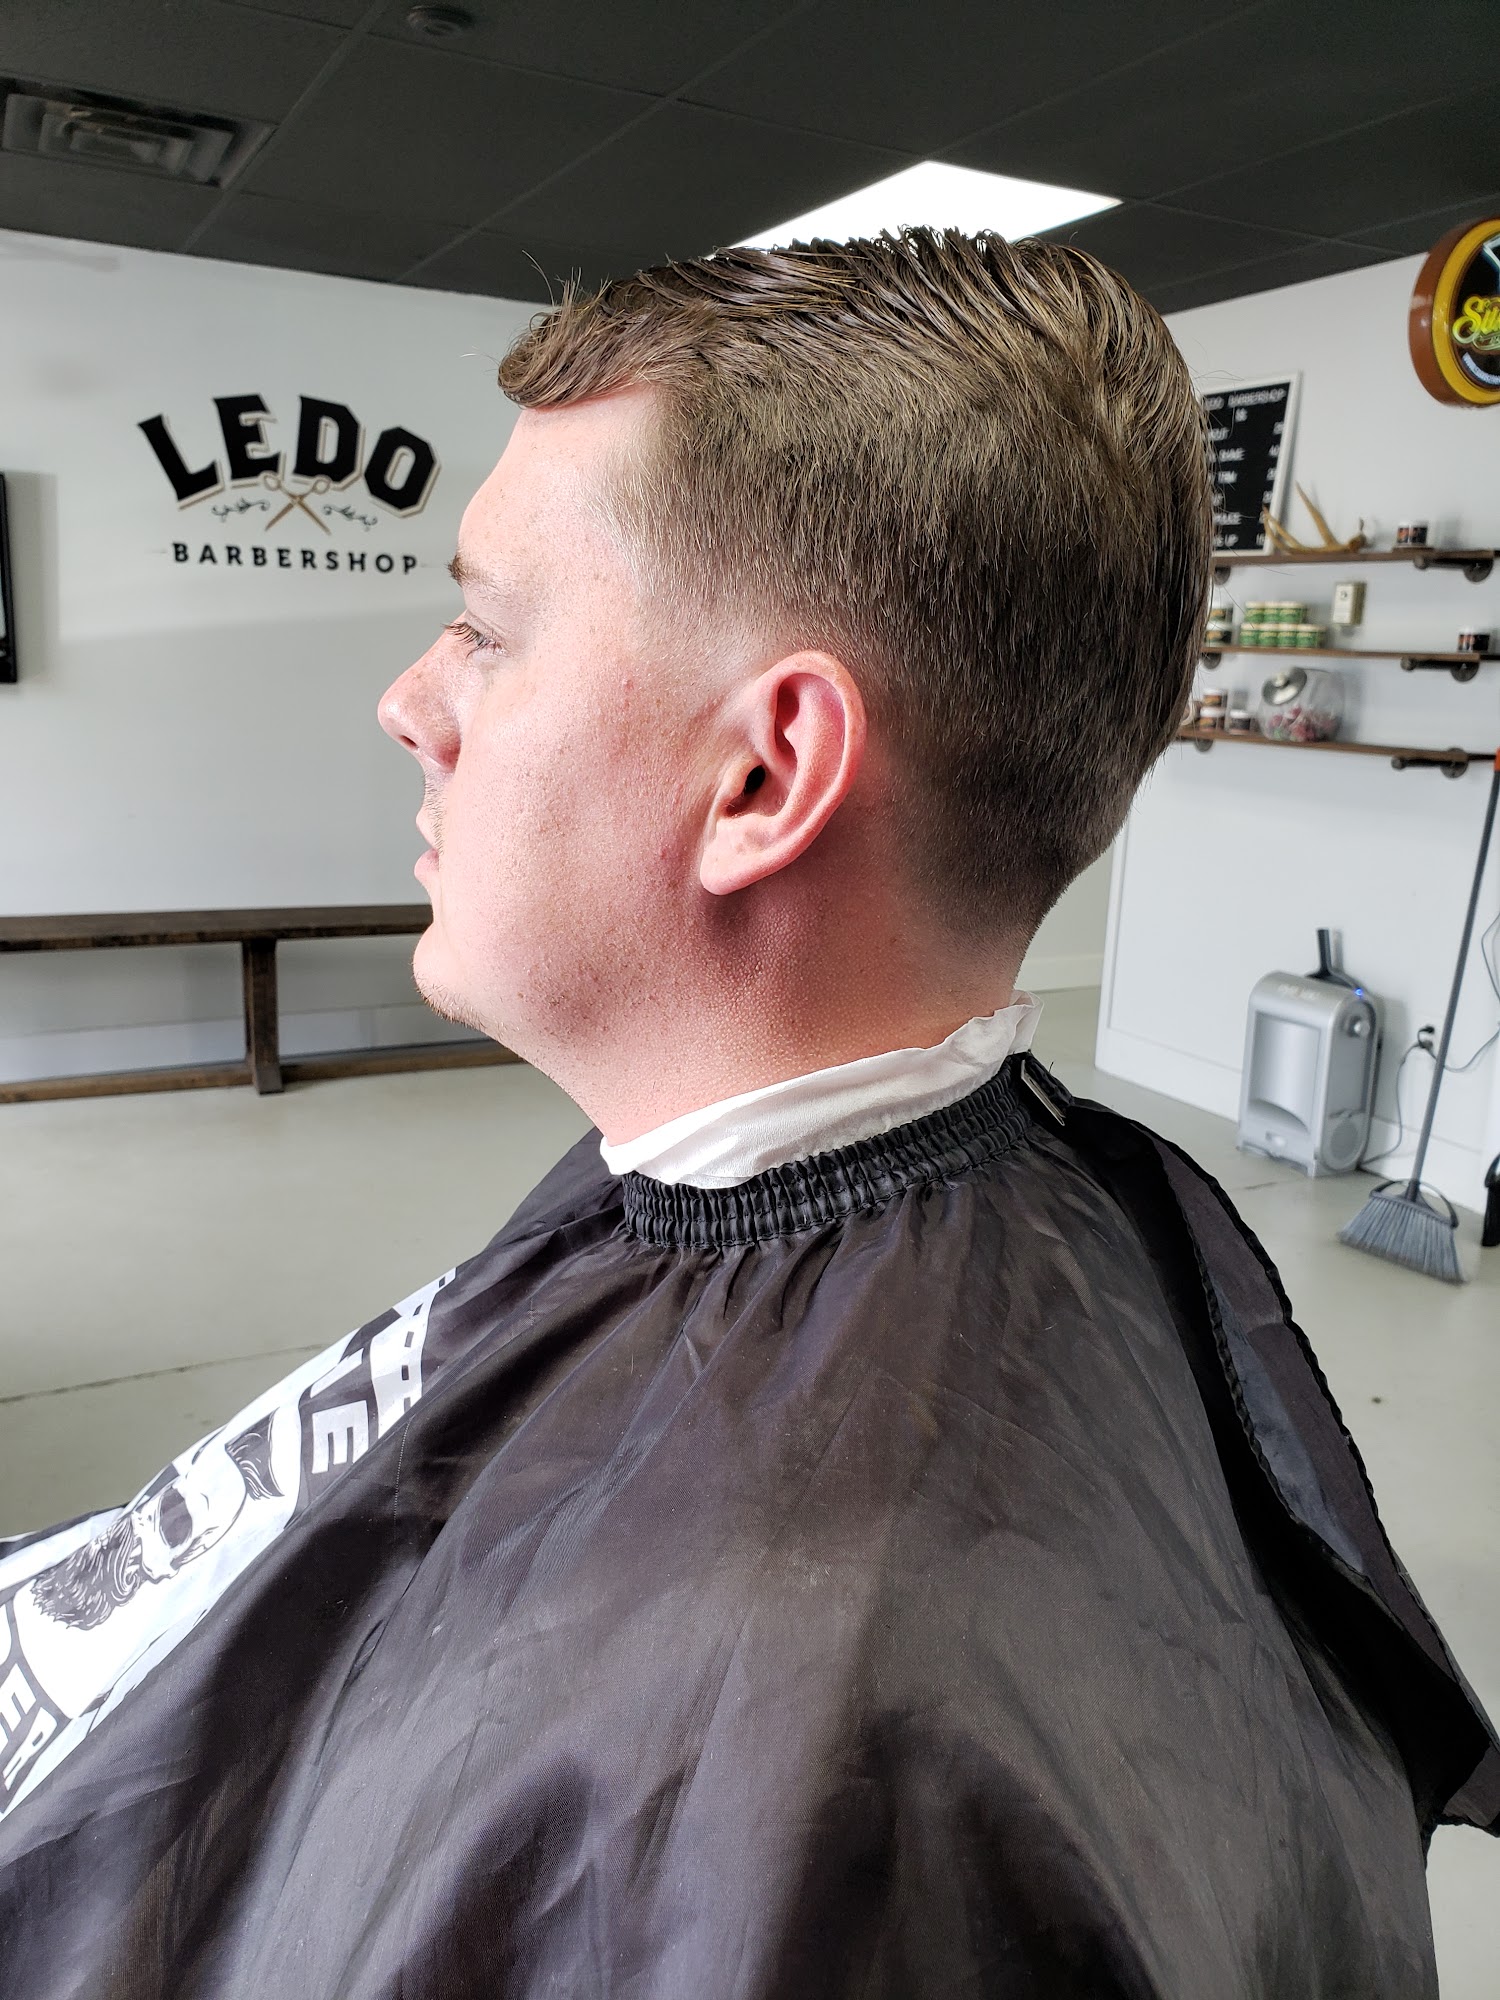 Ledo Barbershop